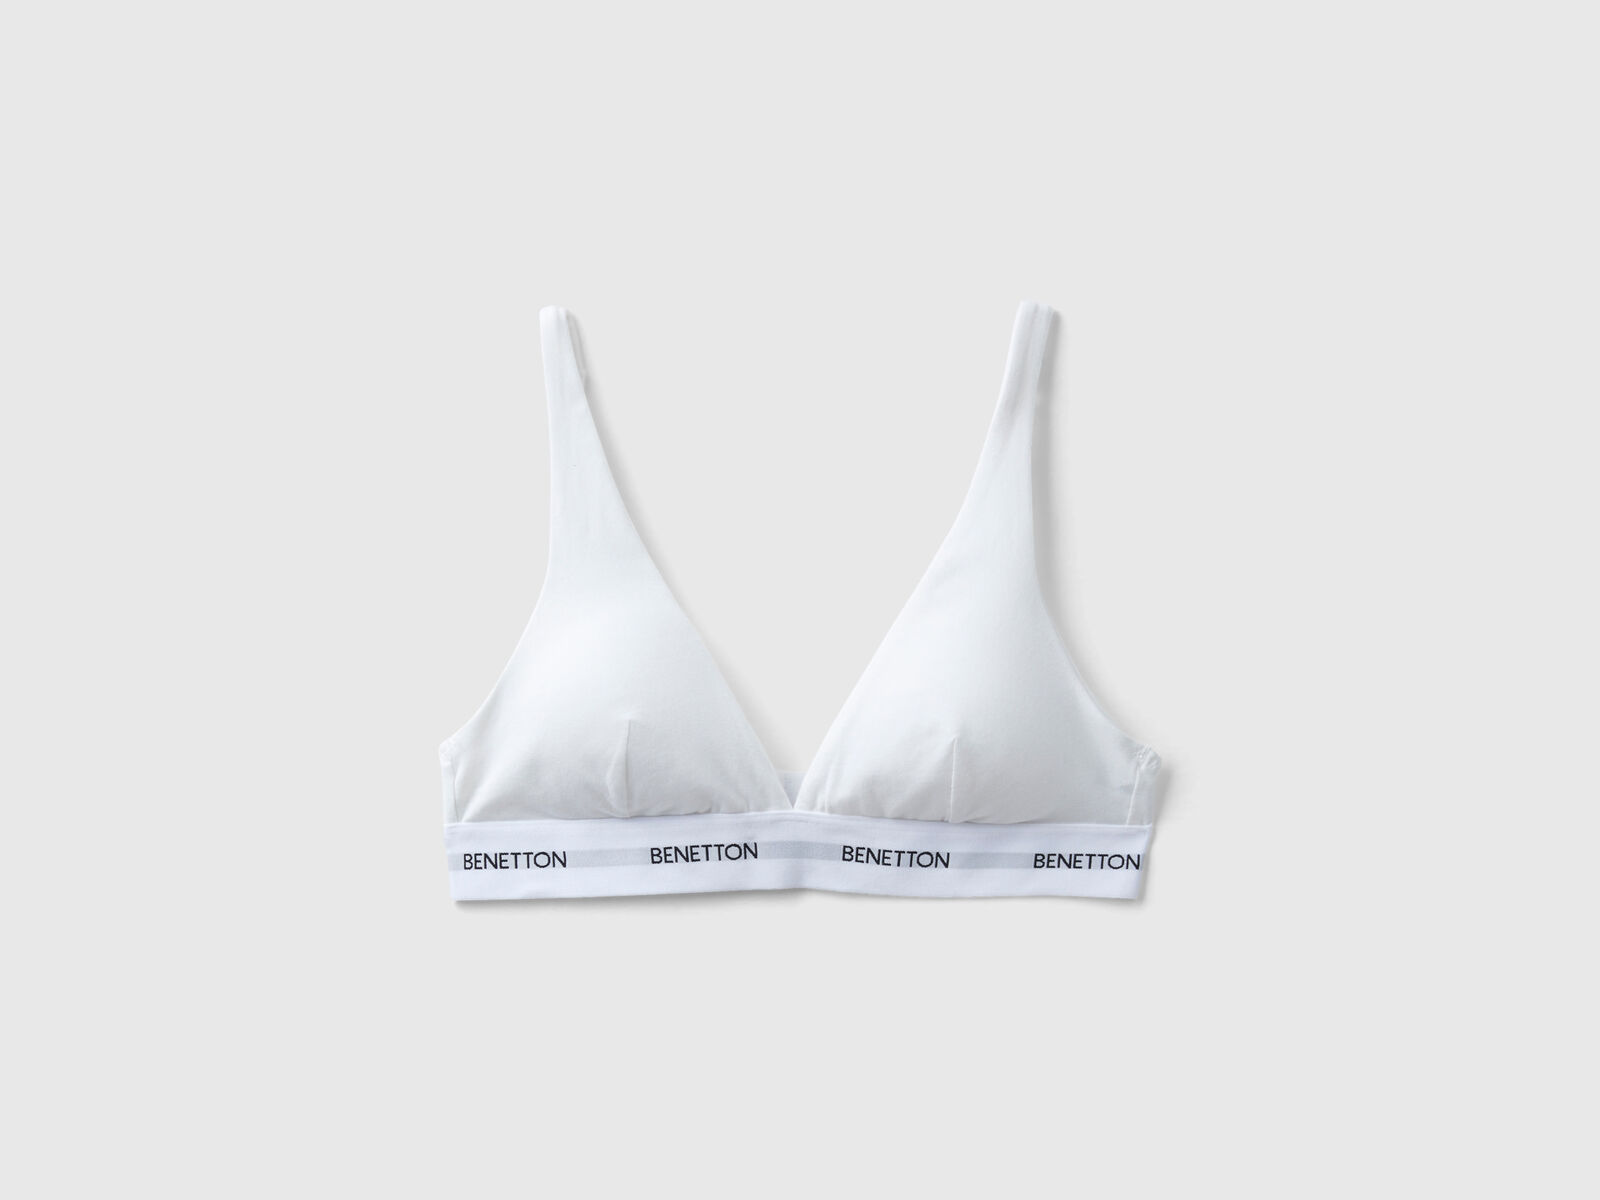 Triangle bra in organic cotton - White